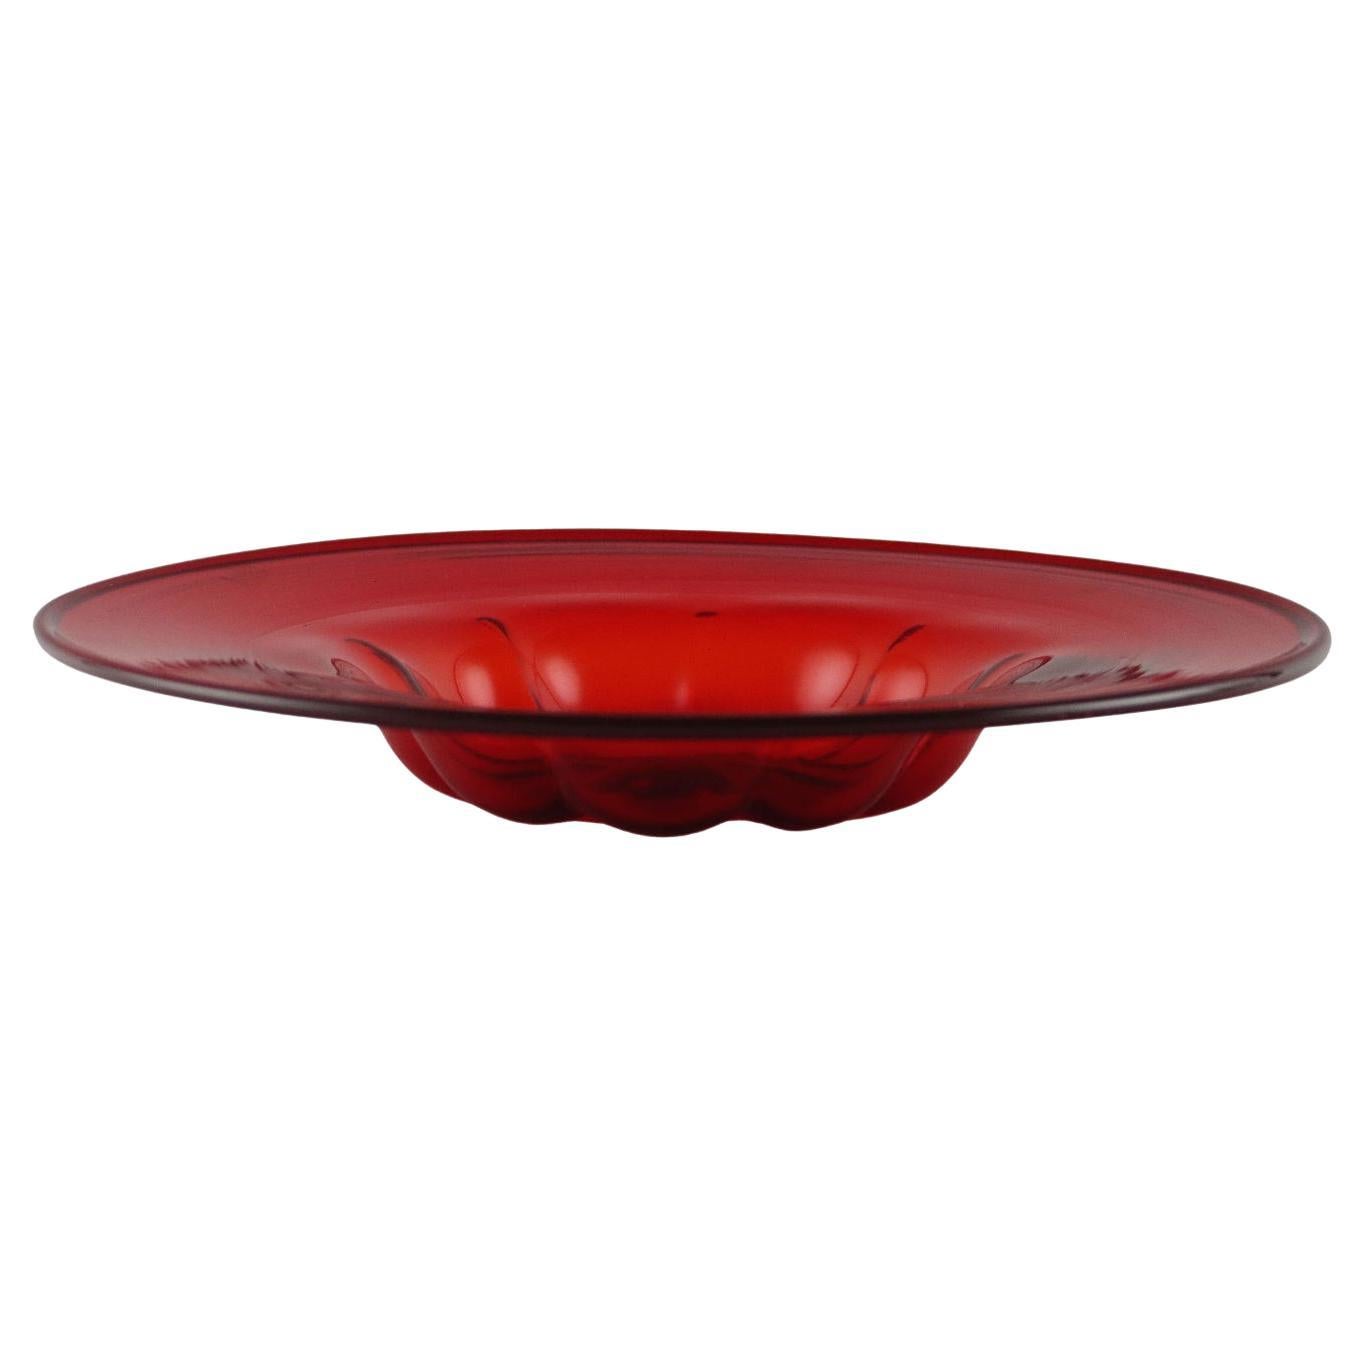 Vittorio Zecchin Blown Glass Dish, 1920s, red For Sale